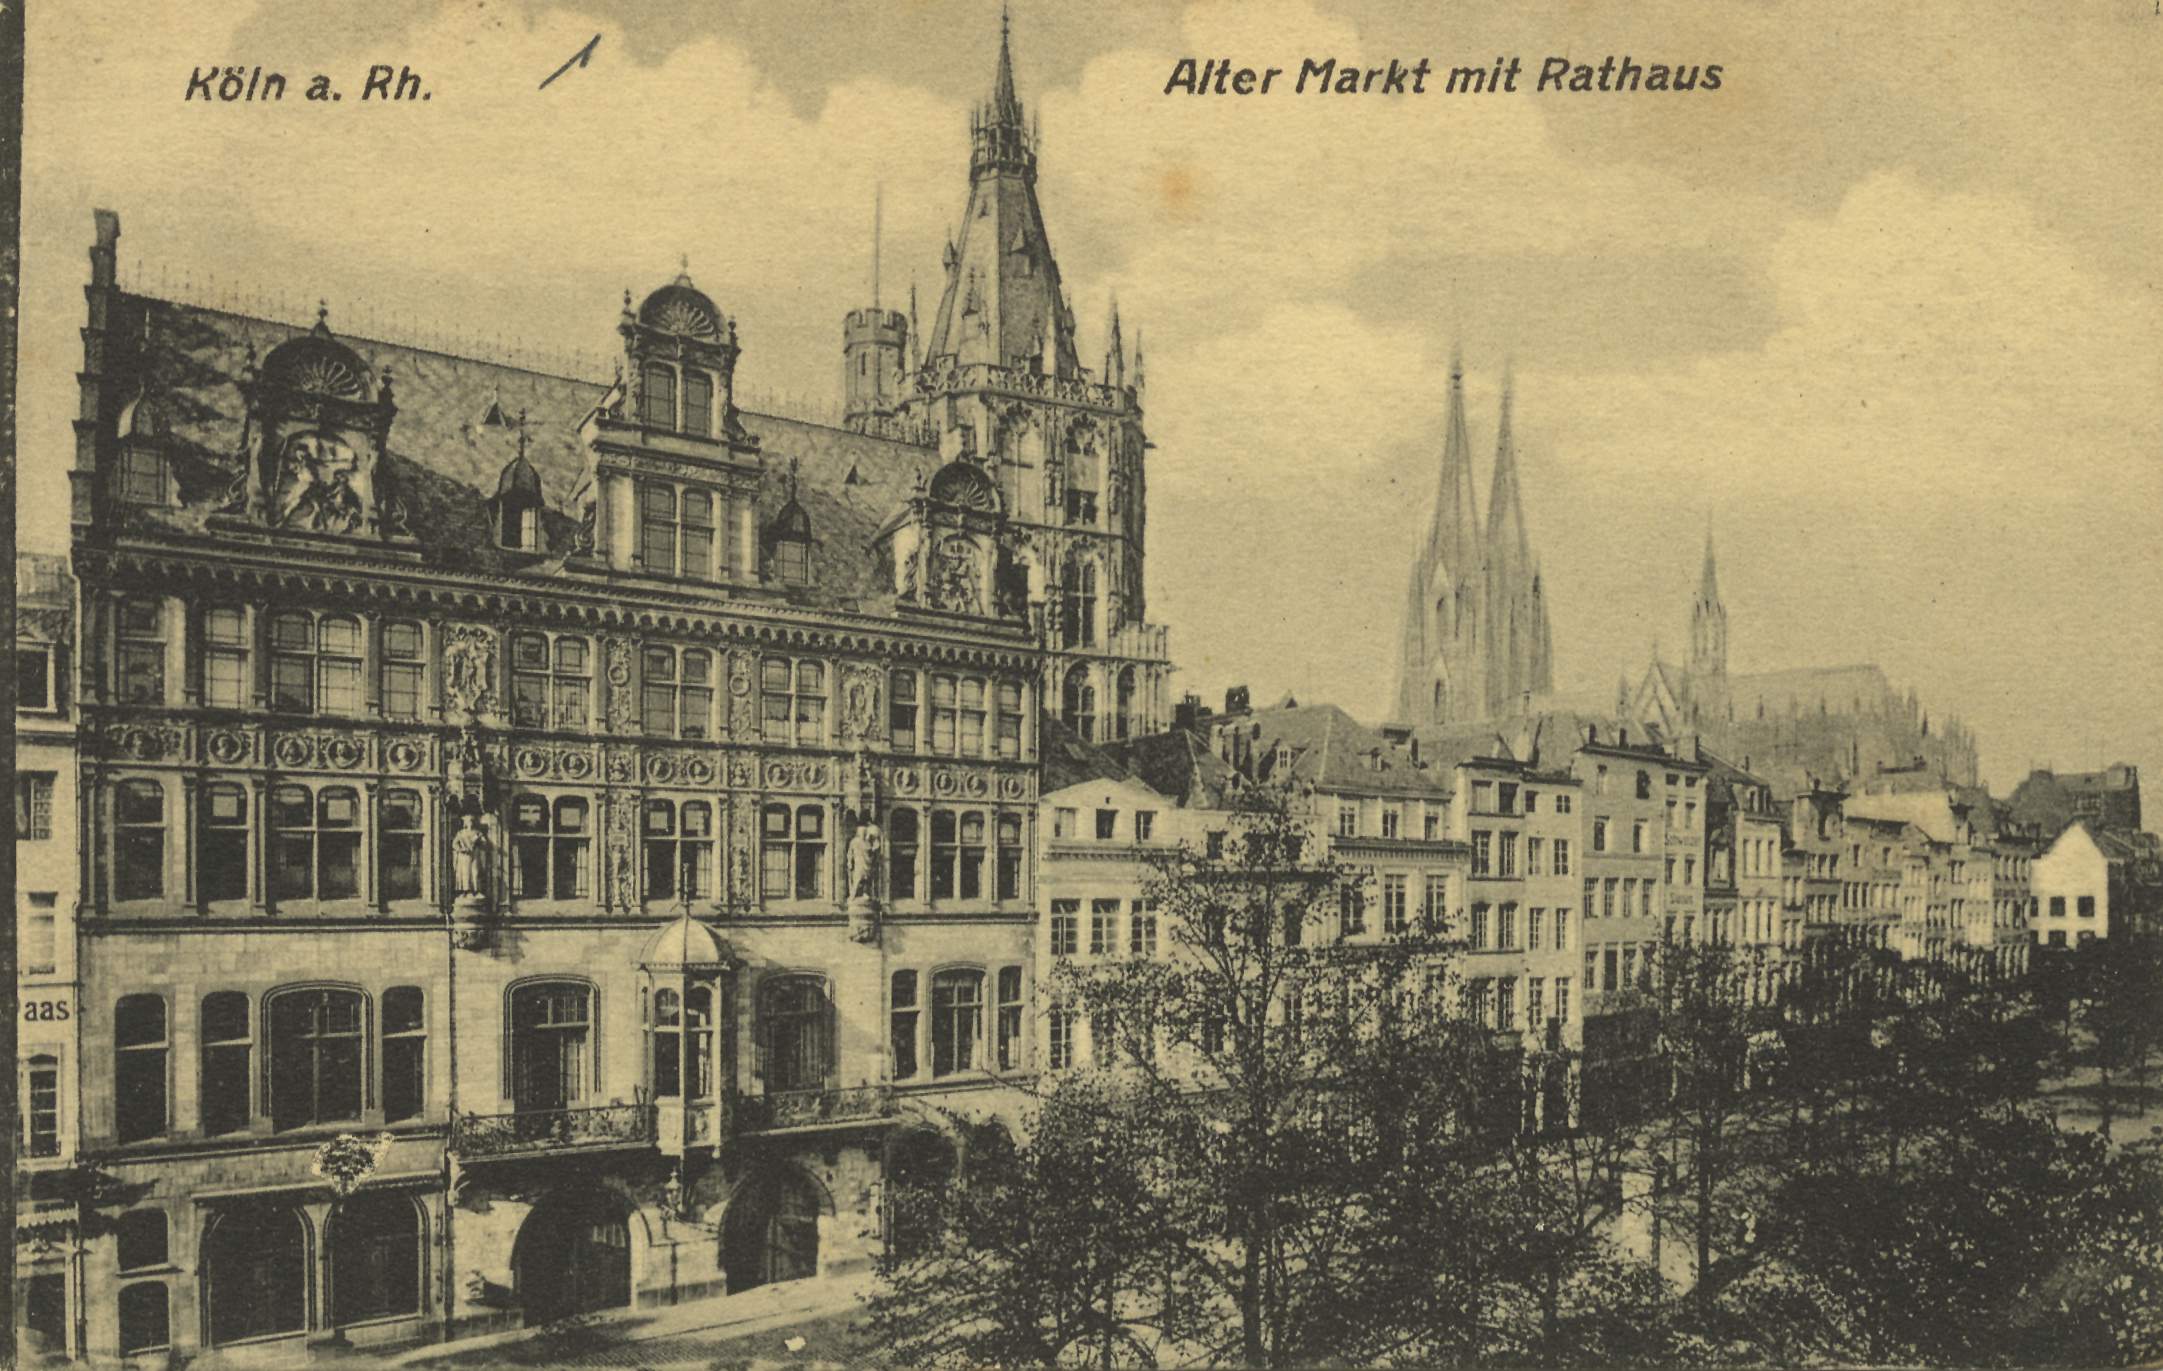 Köln a. Rh., Alter Markt mit Rathaus.jpg